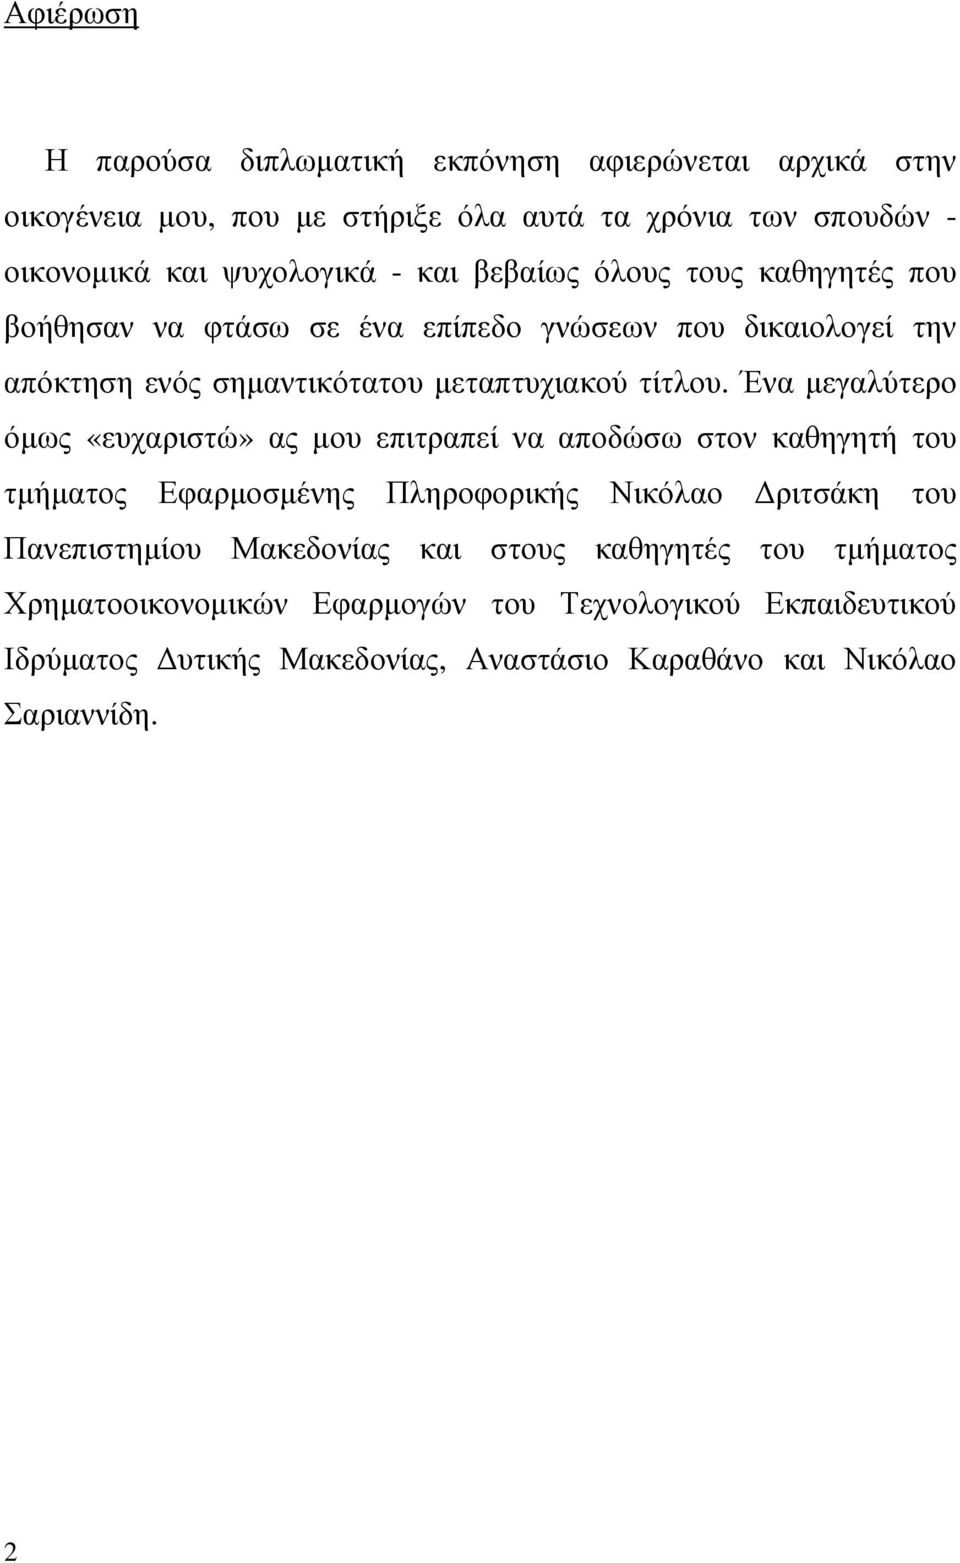 Ένα µεγαλύτερο όµως «ευχαριστώ» ας µου επιτραπεί να αποδώσω στον καθηγητή του τµήµατος Εφαρµοσµένης Πληροφορικής Νικόλαο ριτσάκη του Πανεπιστηµίου Μακεδονίας